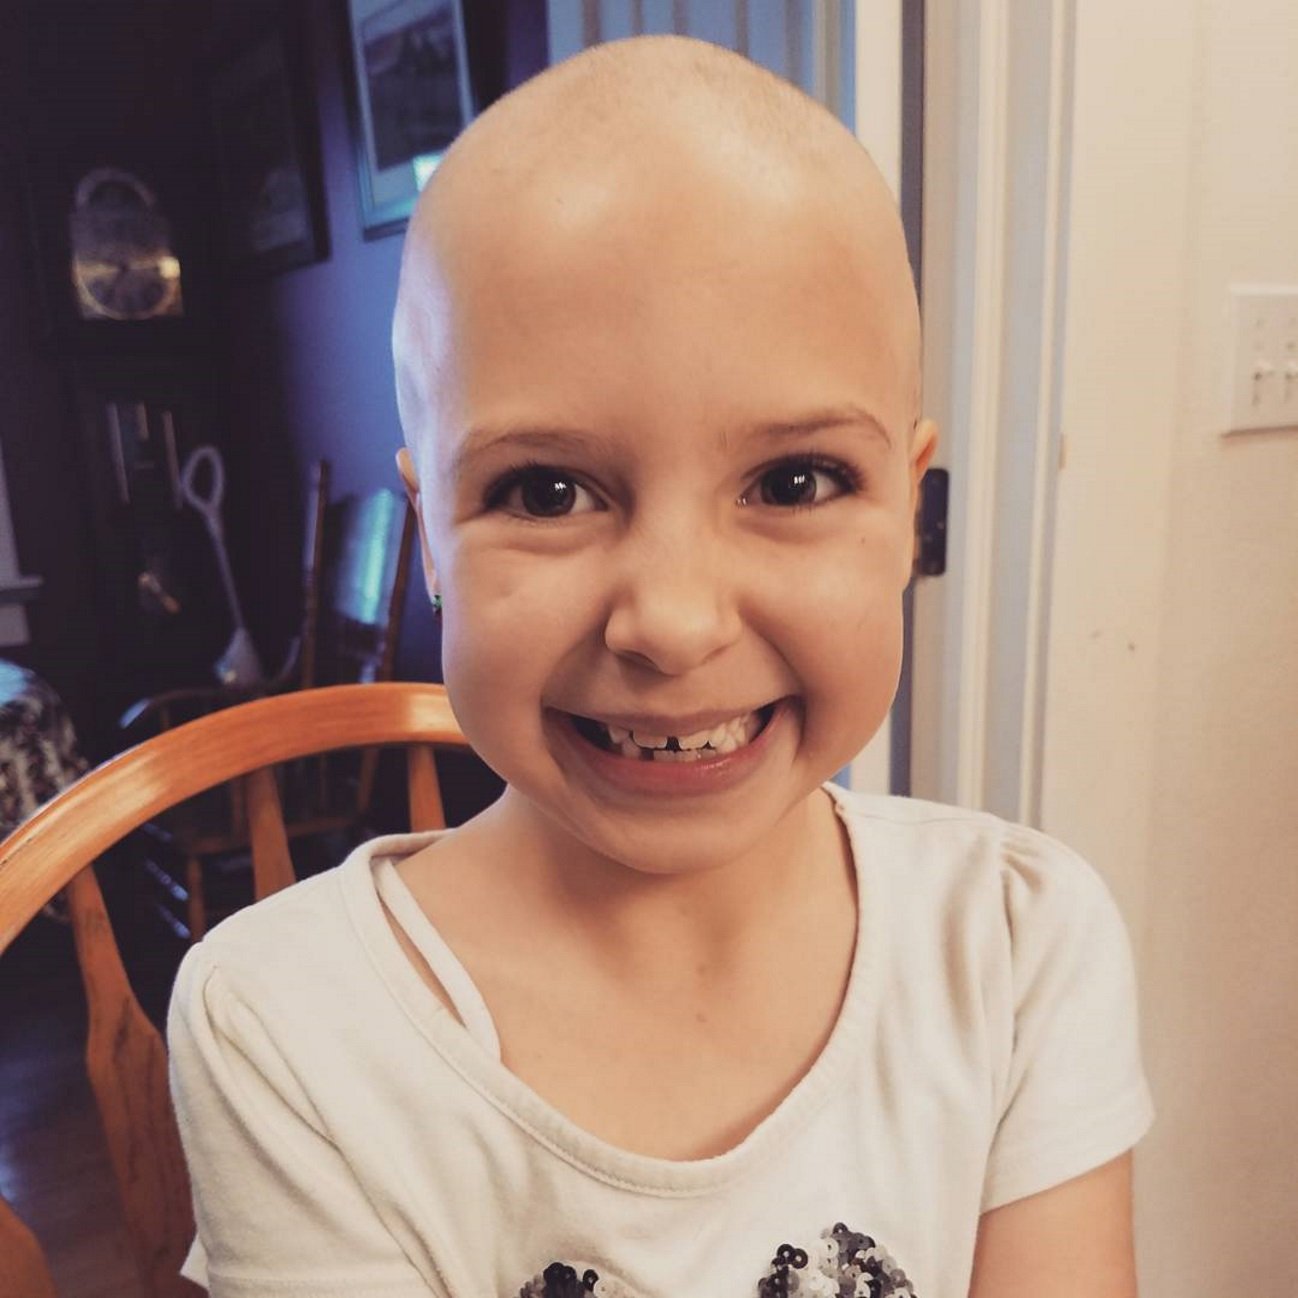 El gran ejemplo de superación de una niña de siete años con alopecia